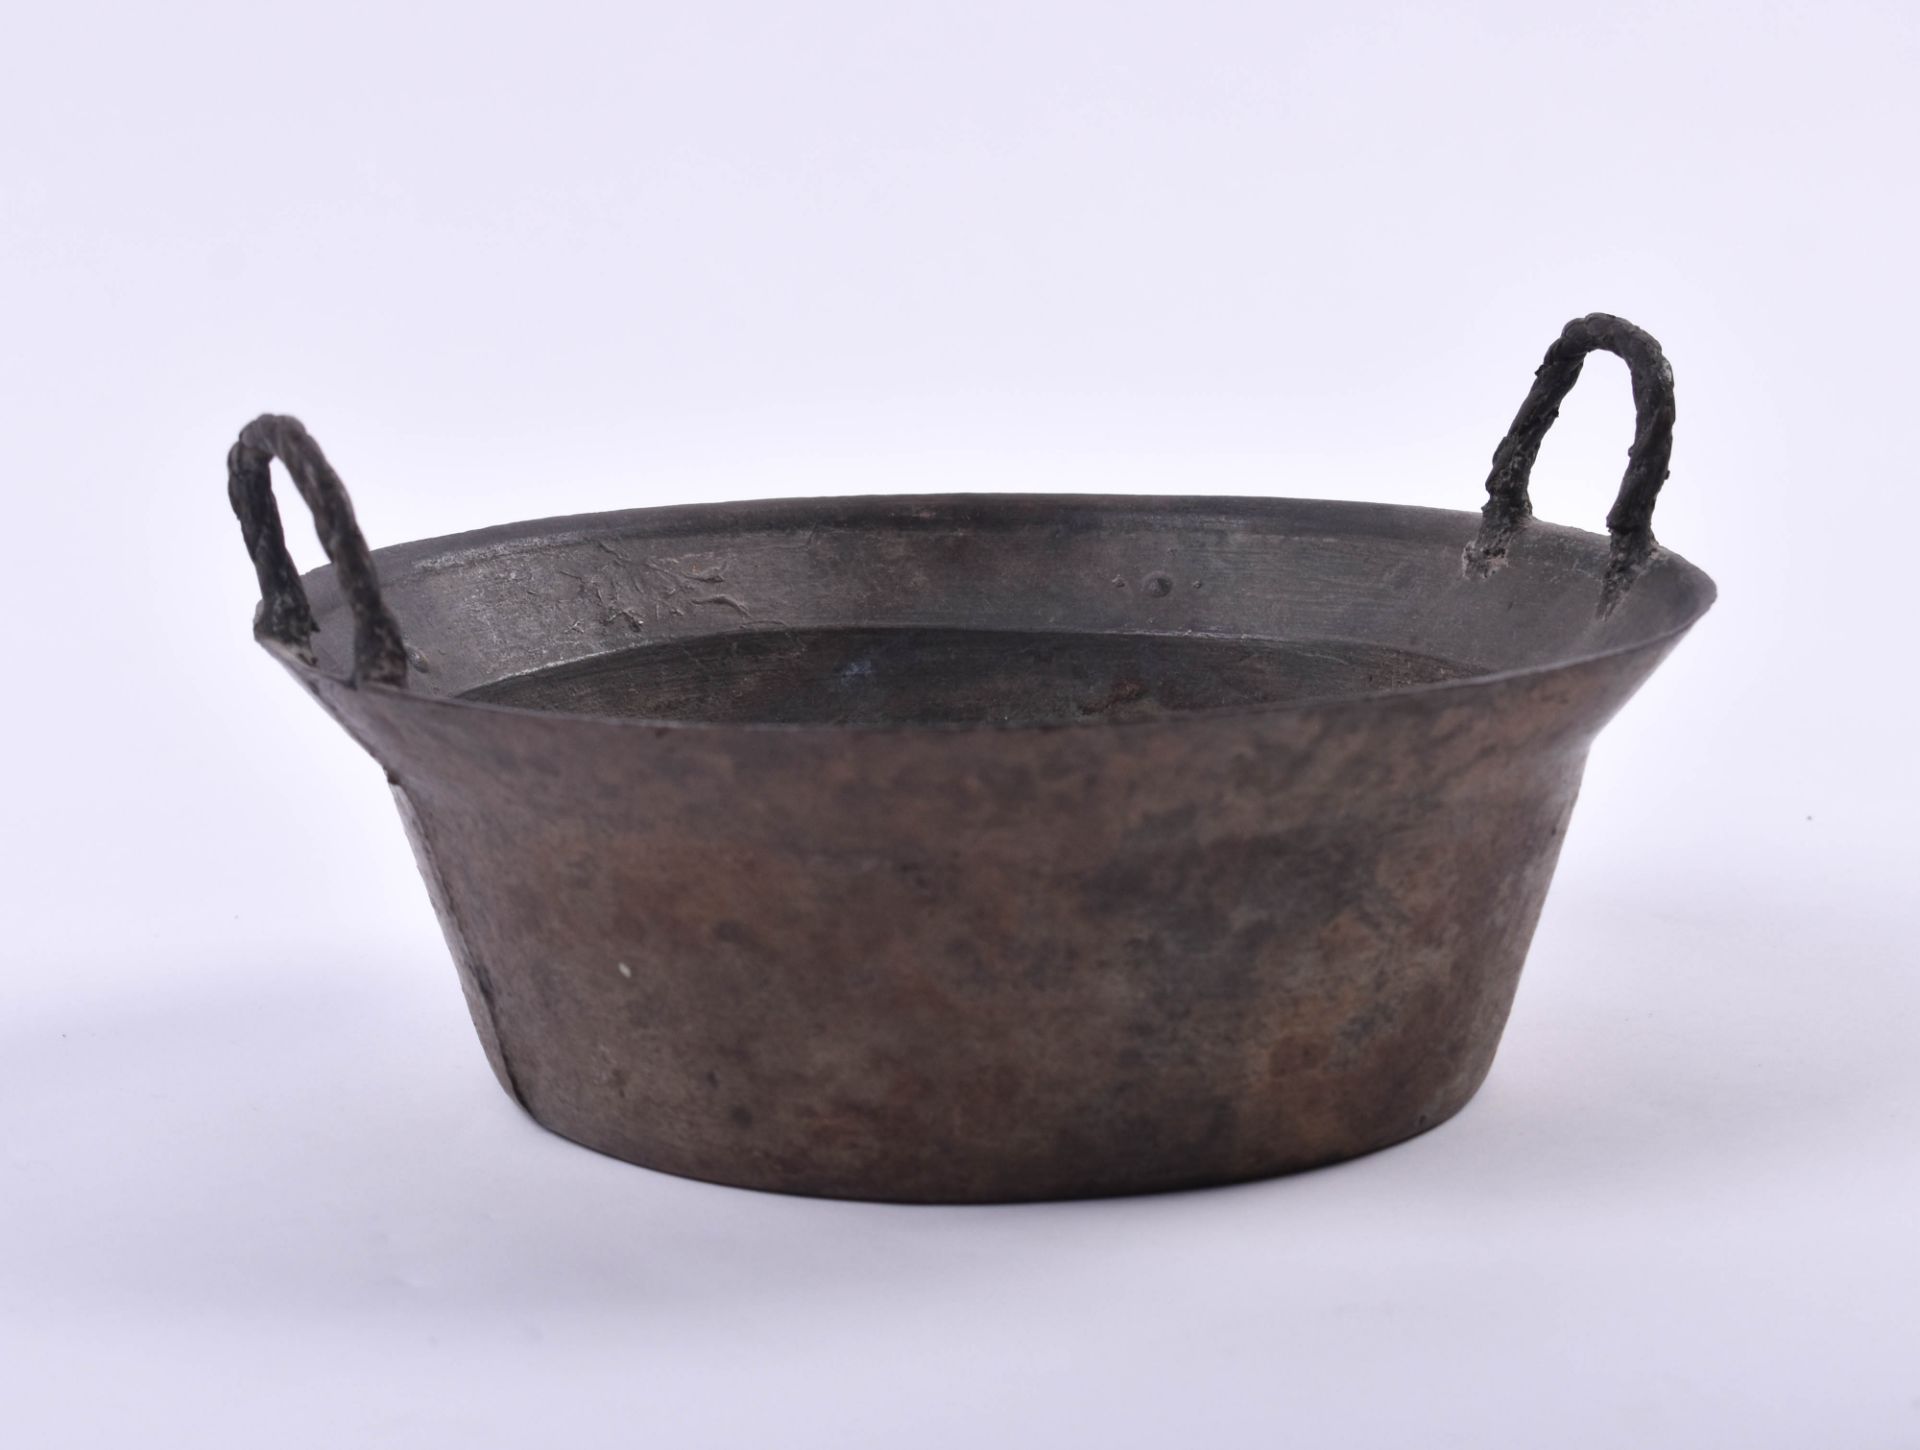  Ritual bowl China Qing dynasty - Image 2 of 6